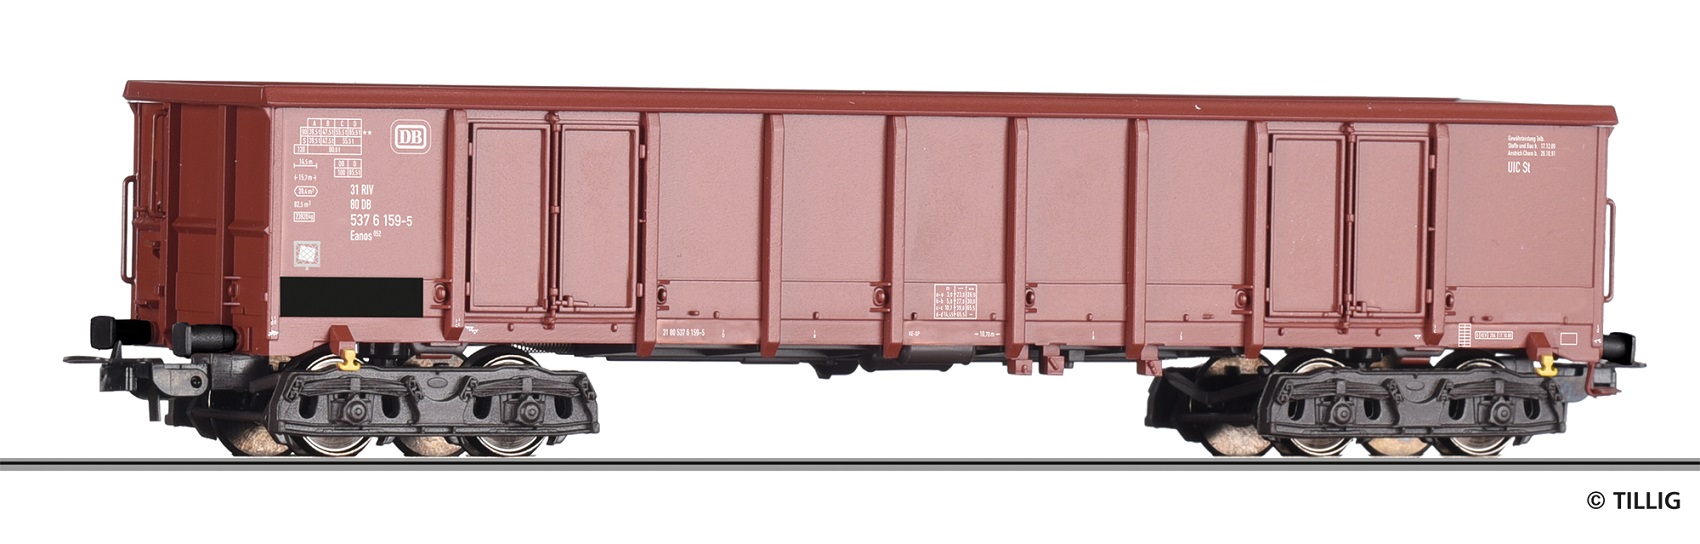 DB off. Güterwagen Eanos Ep.4 braun, Gattung Eanos 052, LüP = 180mm